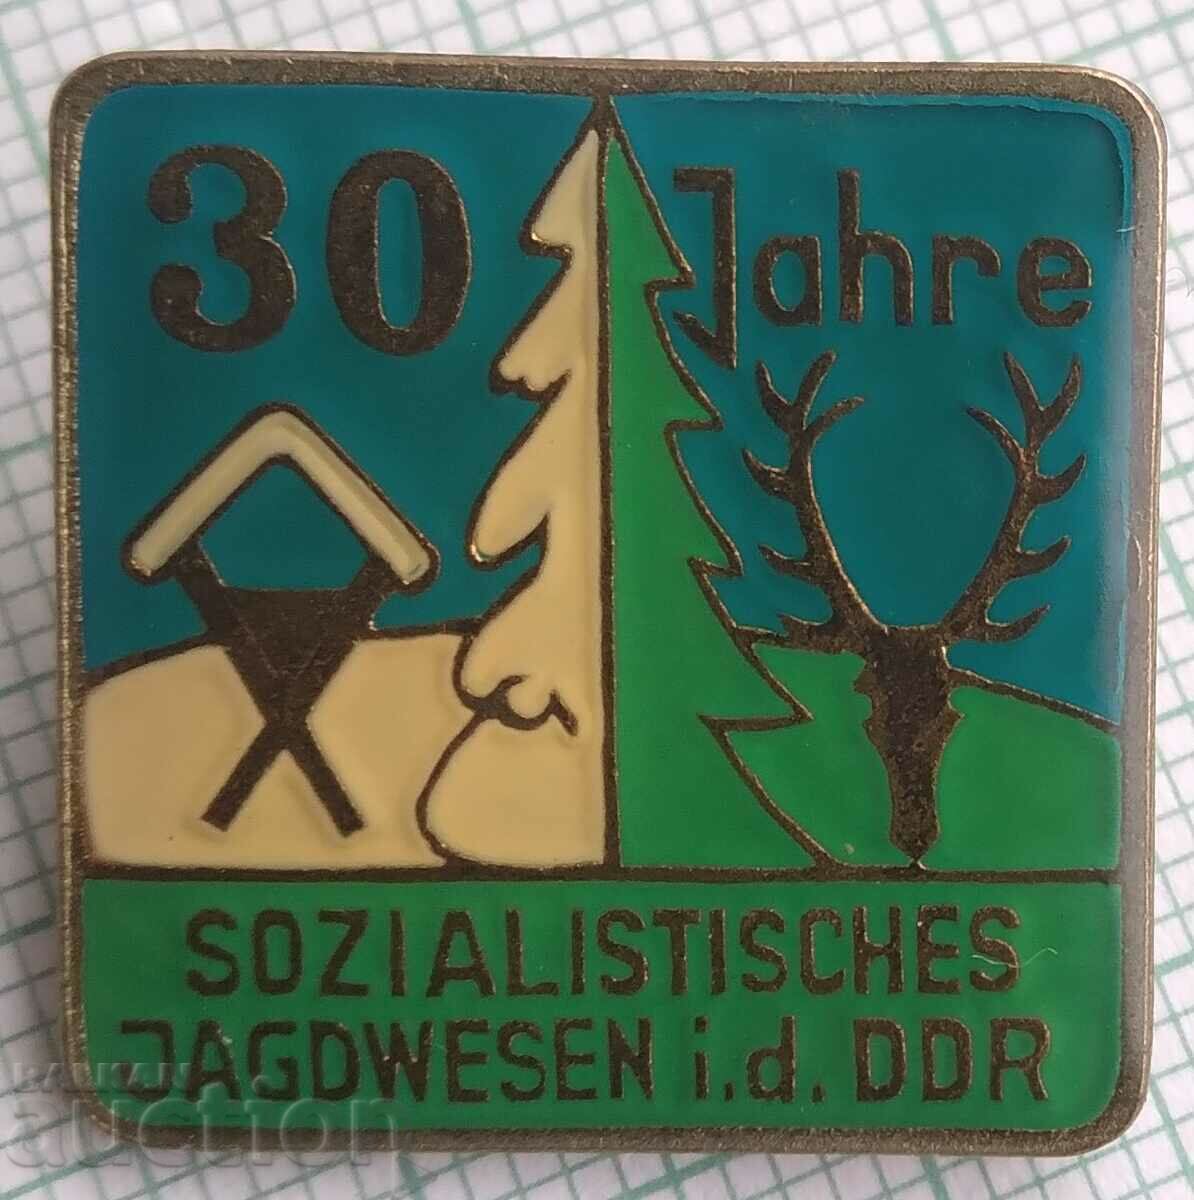 15750 Ловна значка - 30 години социалистически лов в ГДР